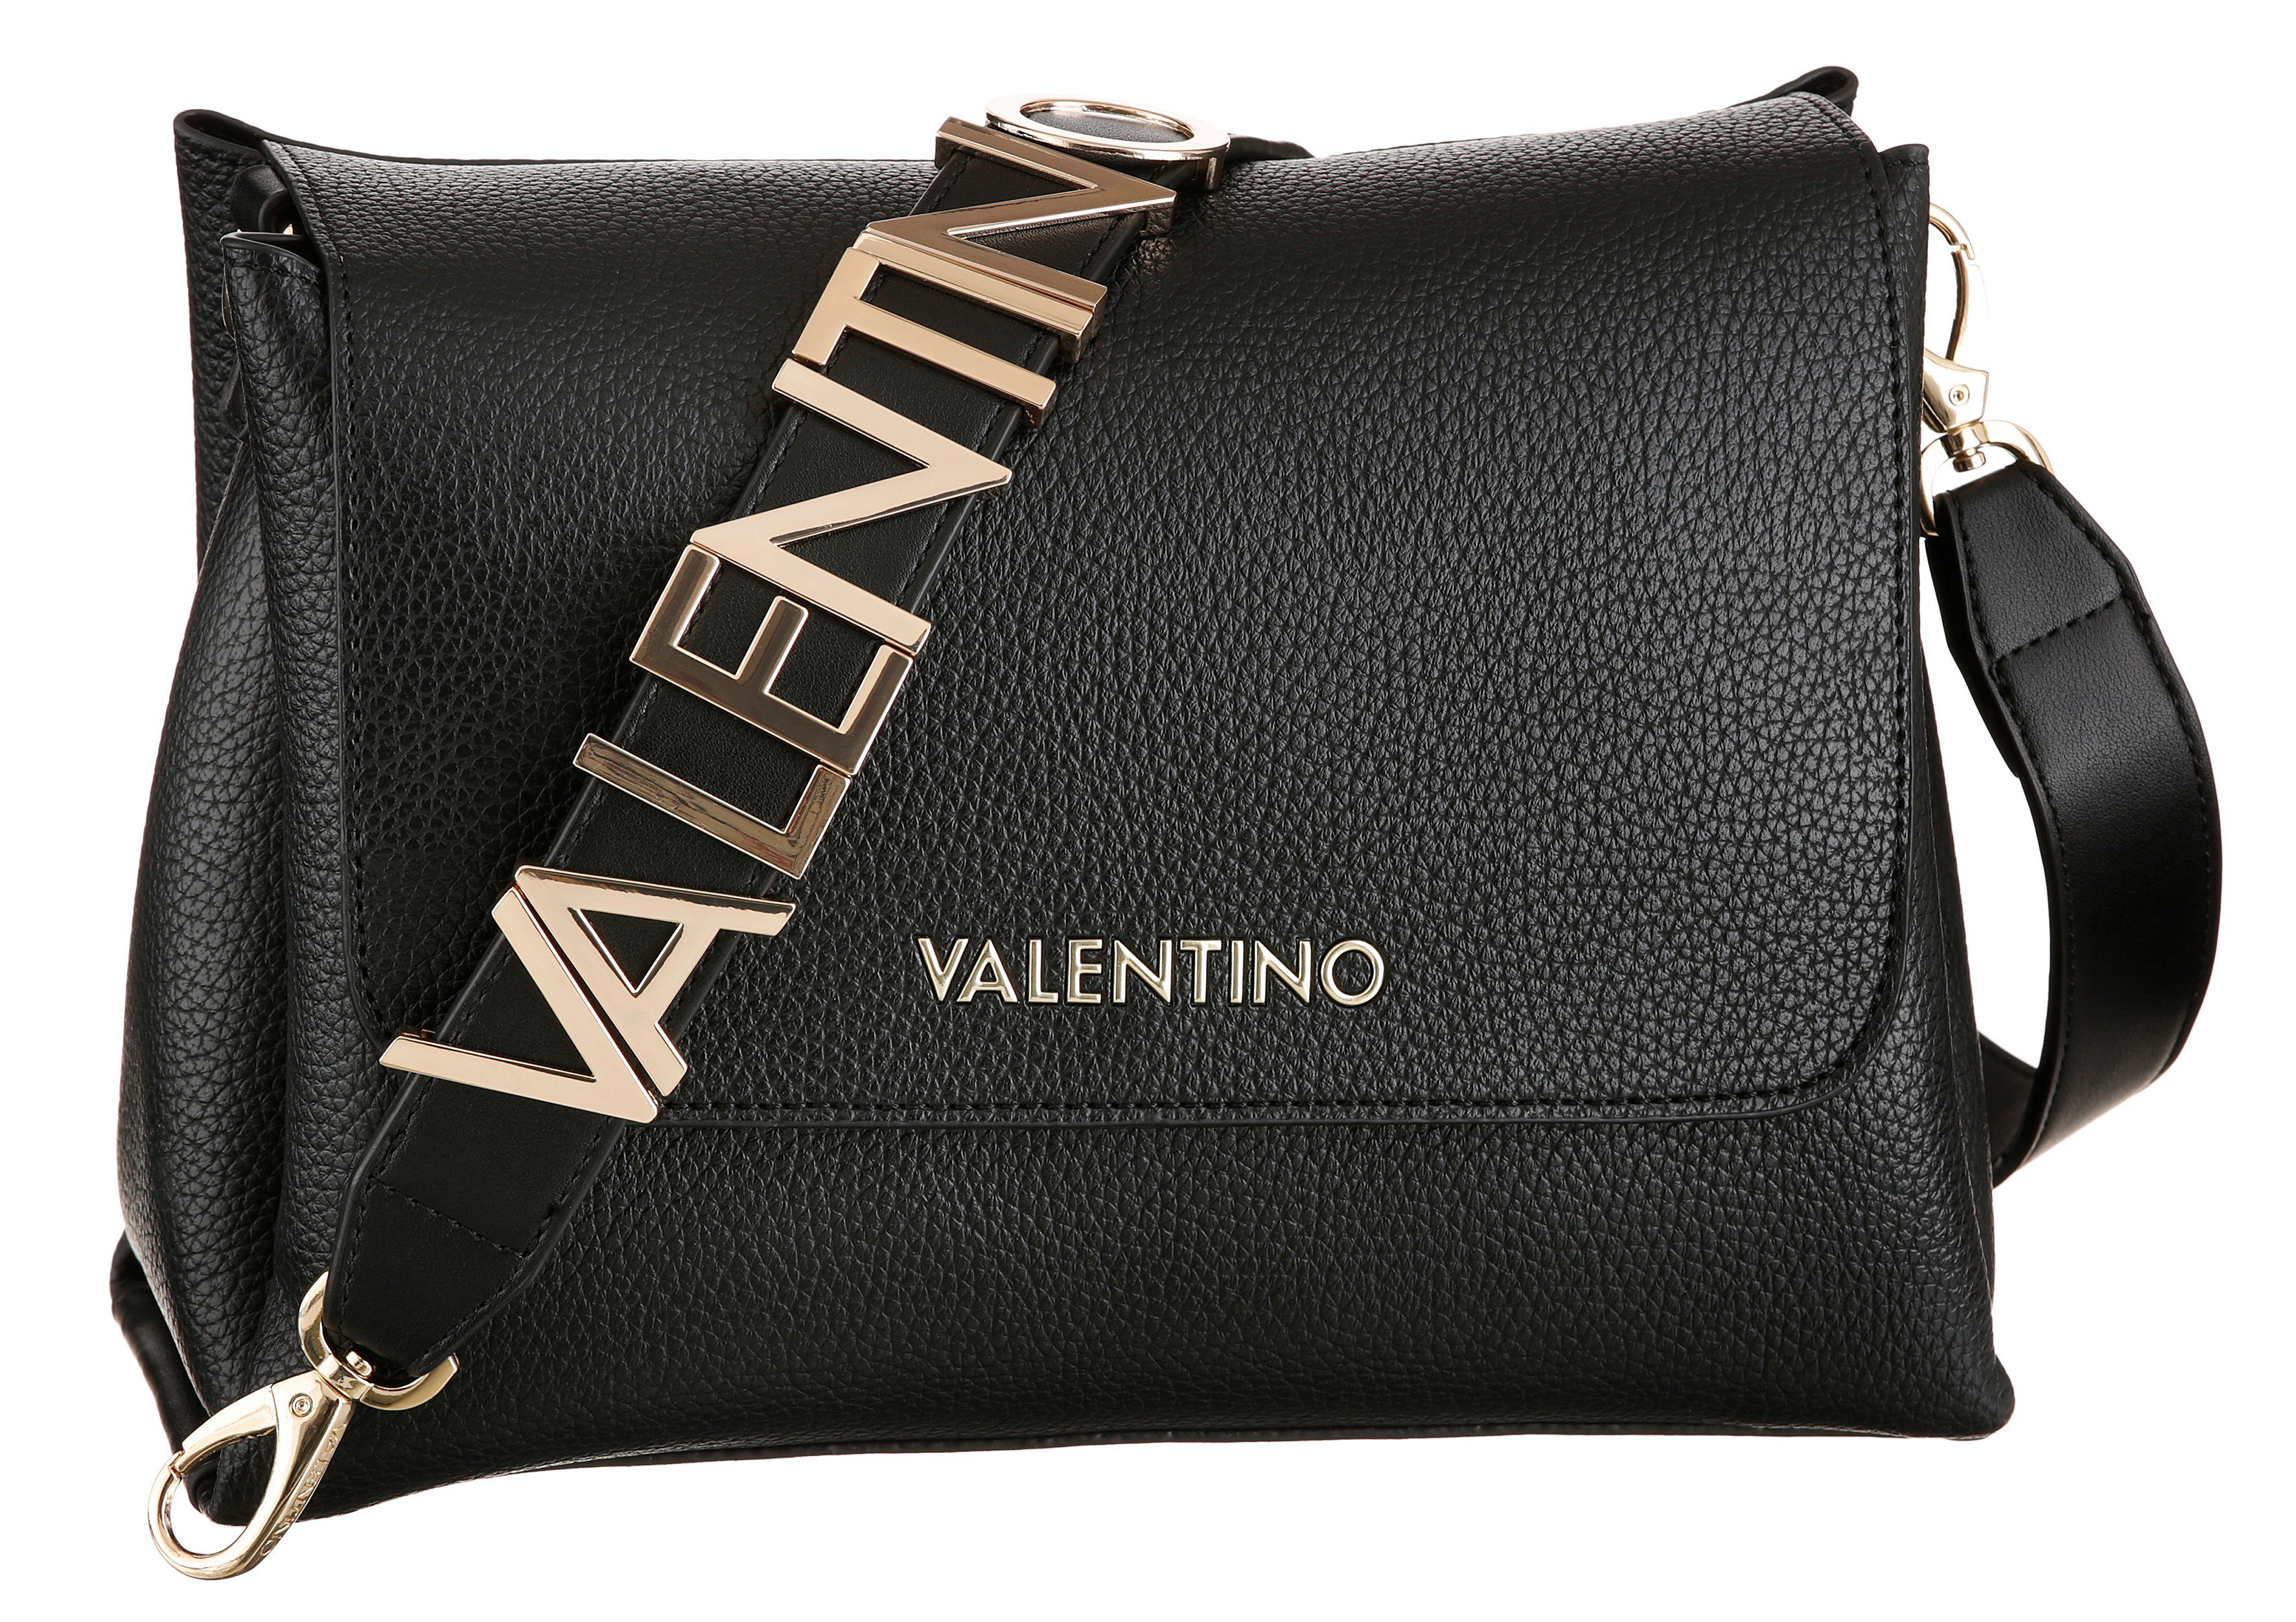 Valentino Handtaschen kaufen » Valentino Handbags | OTTO